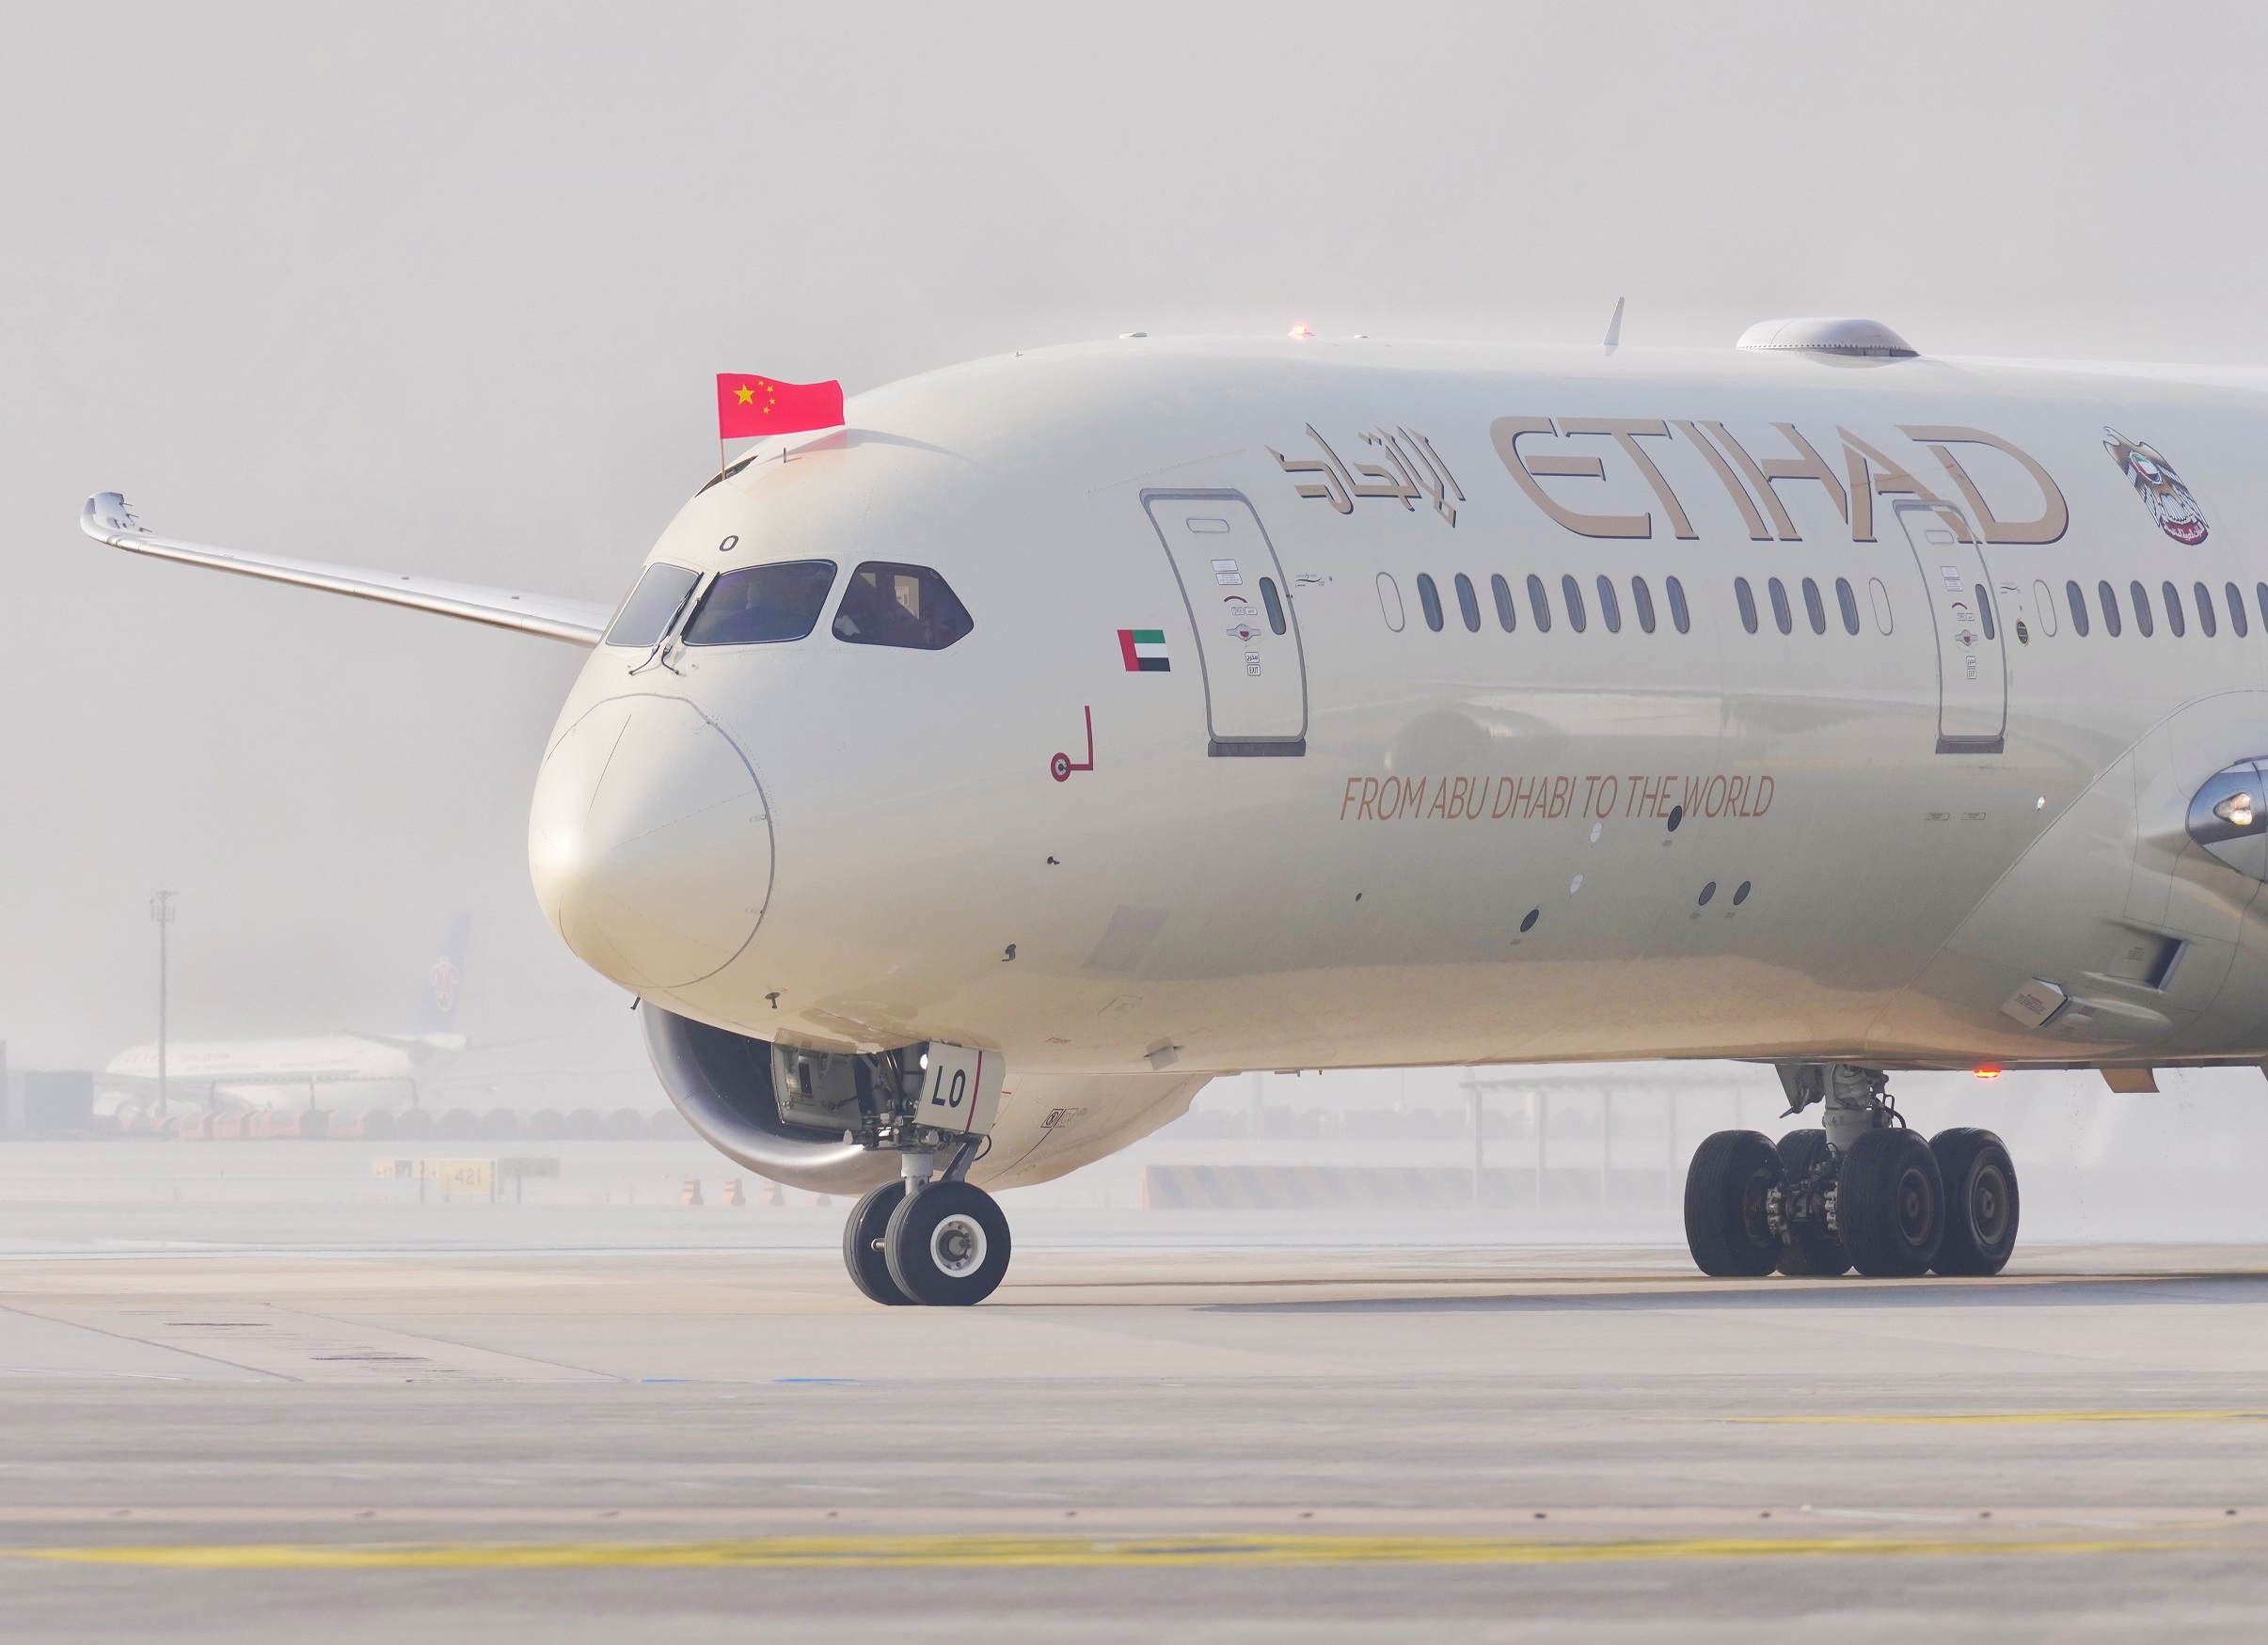 رحلة الاتحاد للطيران الافتتاحية تصل مطار بكين داشنغ الدولي بنجاح